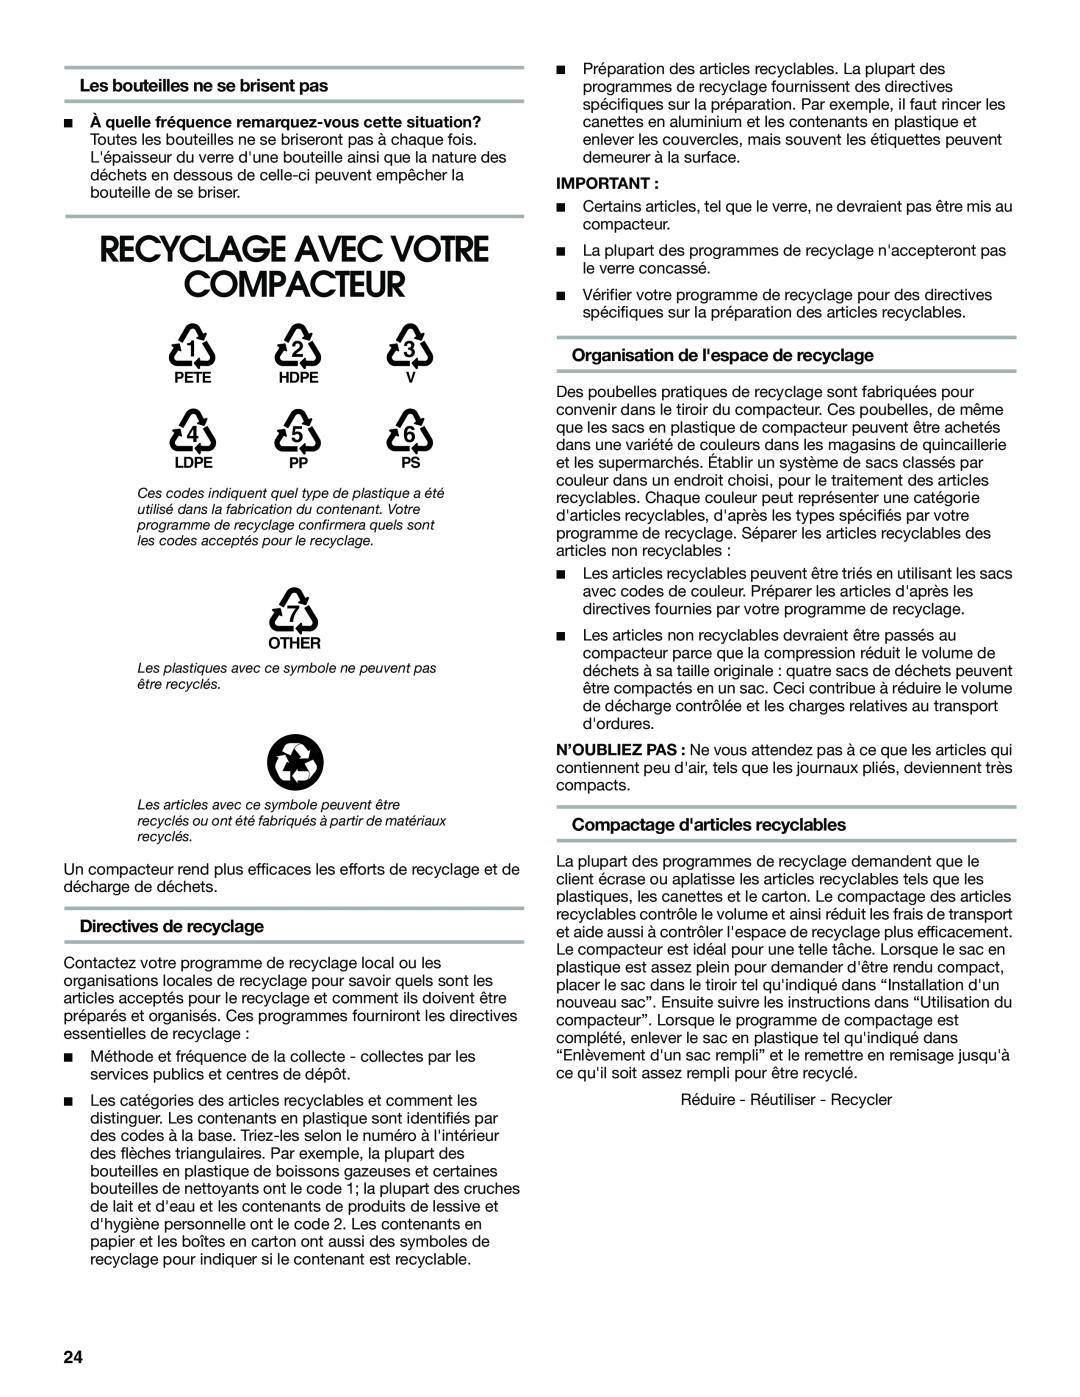 Jenn-Air W10242571A Compacteur, Recyclage Avec Votre, Les bouteilles ne se brisent pas, Directives de recyclage, Ldpe Ppps 